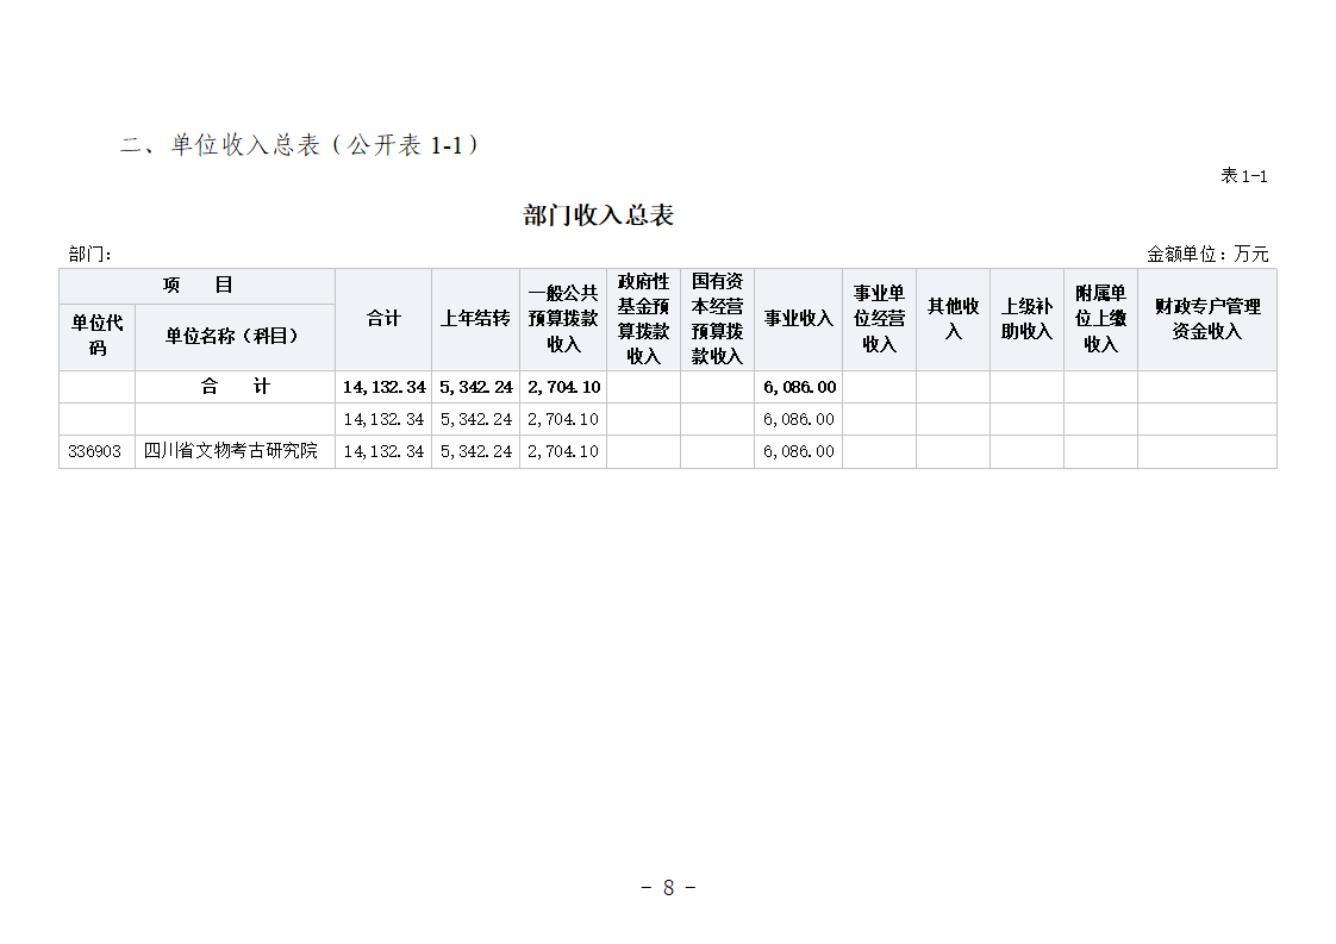 省考古院2024年四川省省级单位预算公开模板(3.14)_09.jpg